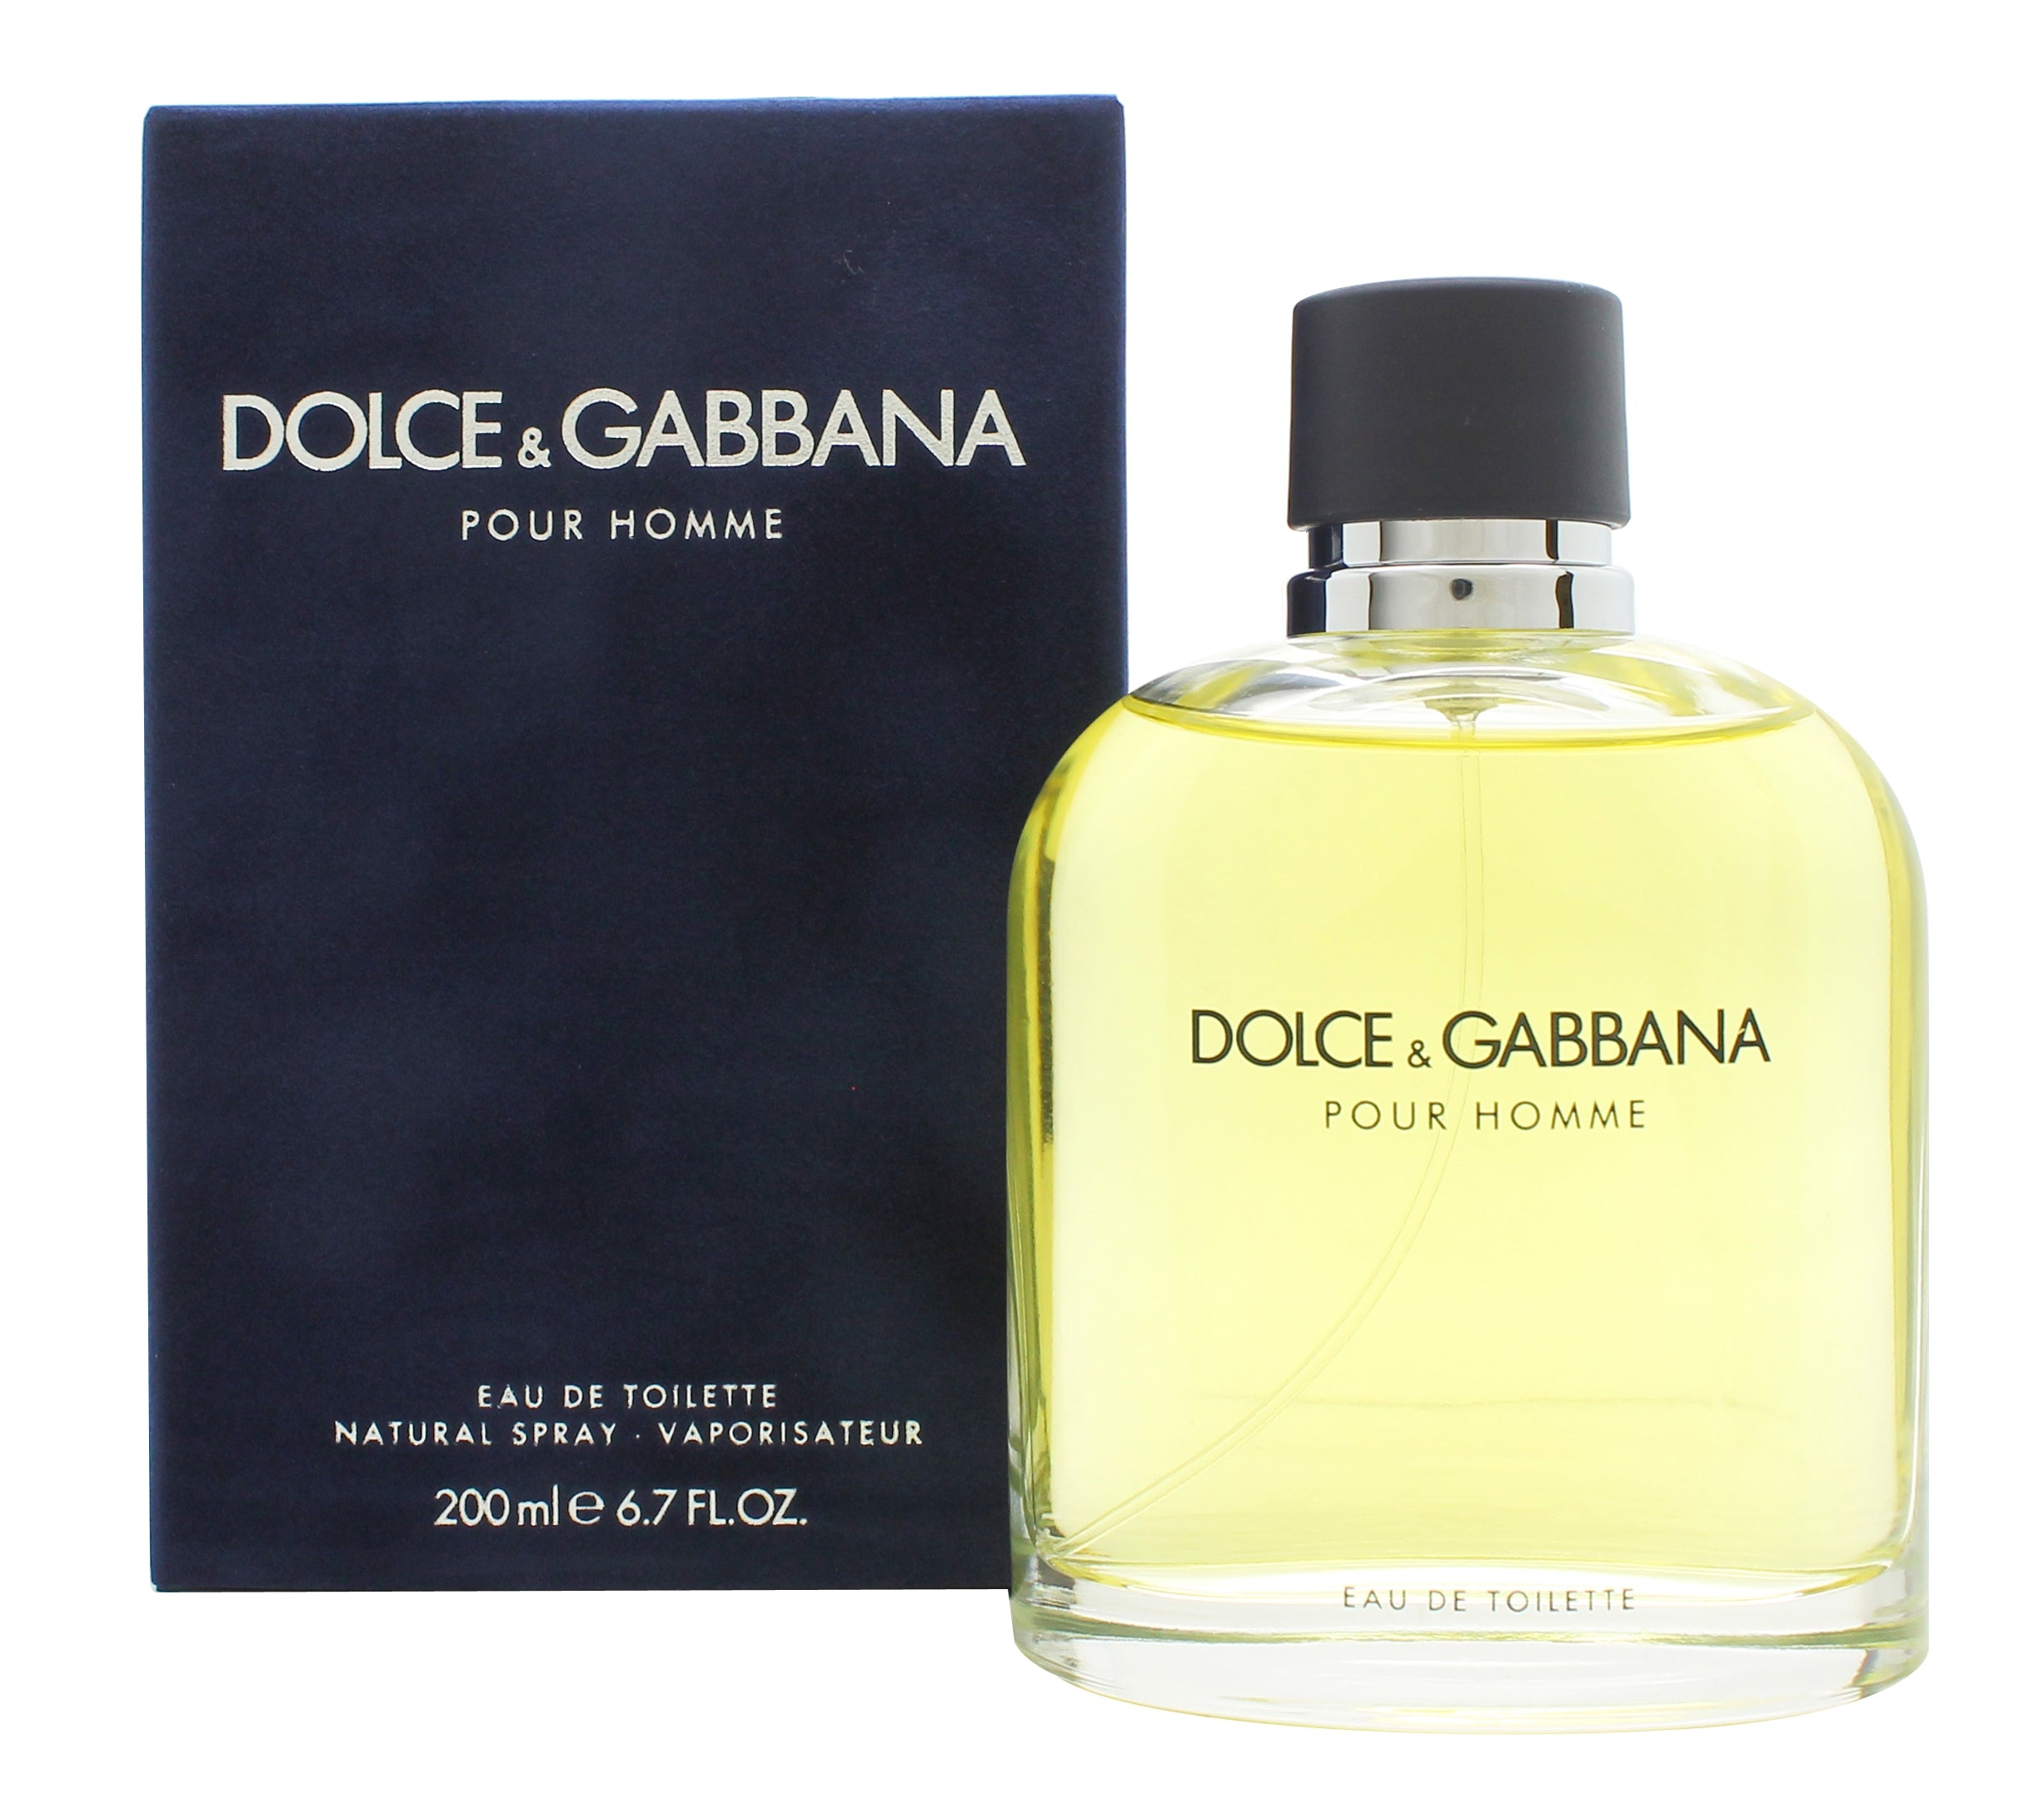 View Dolce Gabbana Pour Homme Eau de Toilette 200ml Spray information